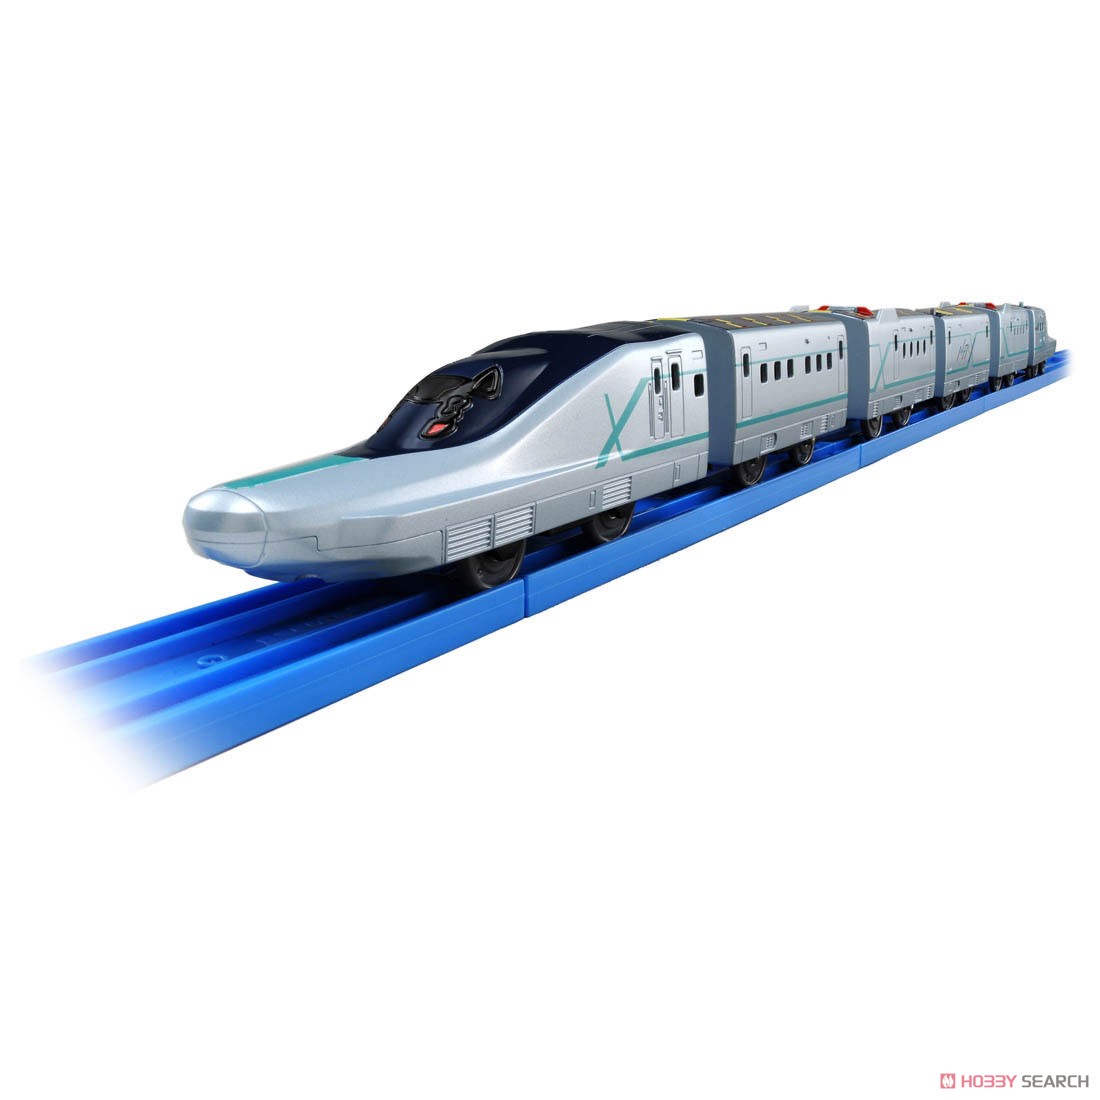 いっぱいつなごう 新幹線試験車両 ALFA-X (アルファエックス) (プラレール) 商品画像2